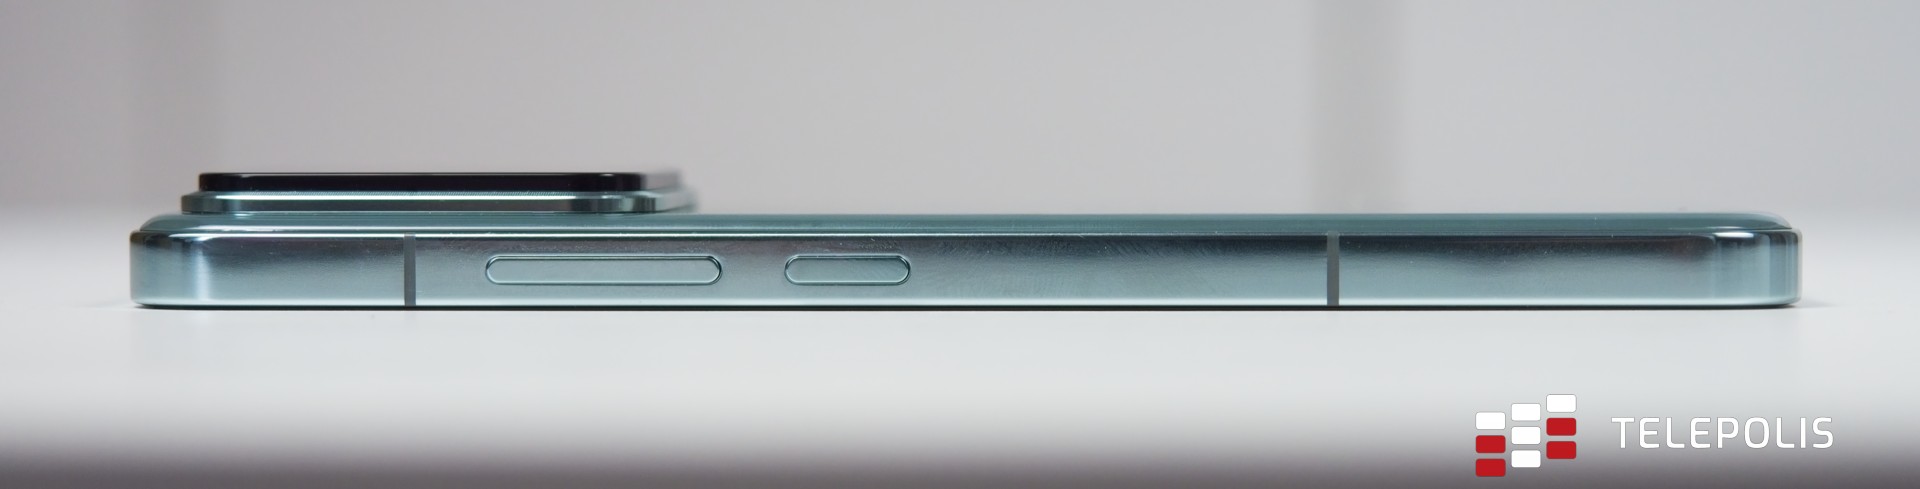 Xiaomi 14 – telefon pełen sprzeczności (test)